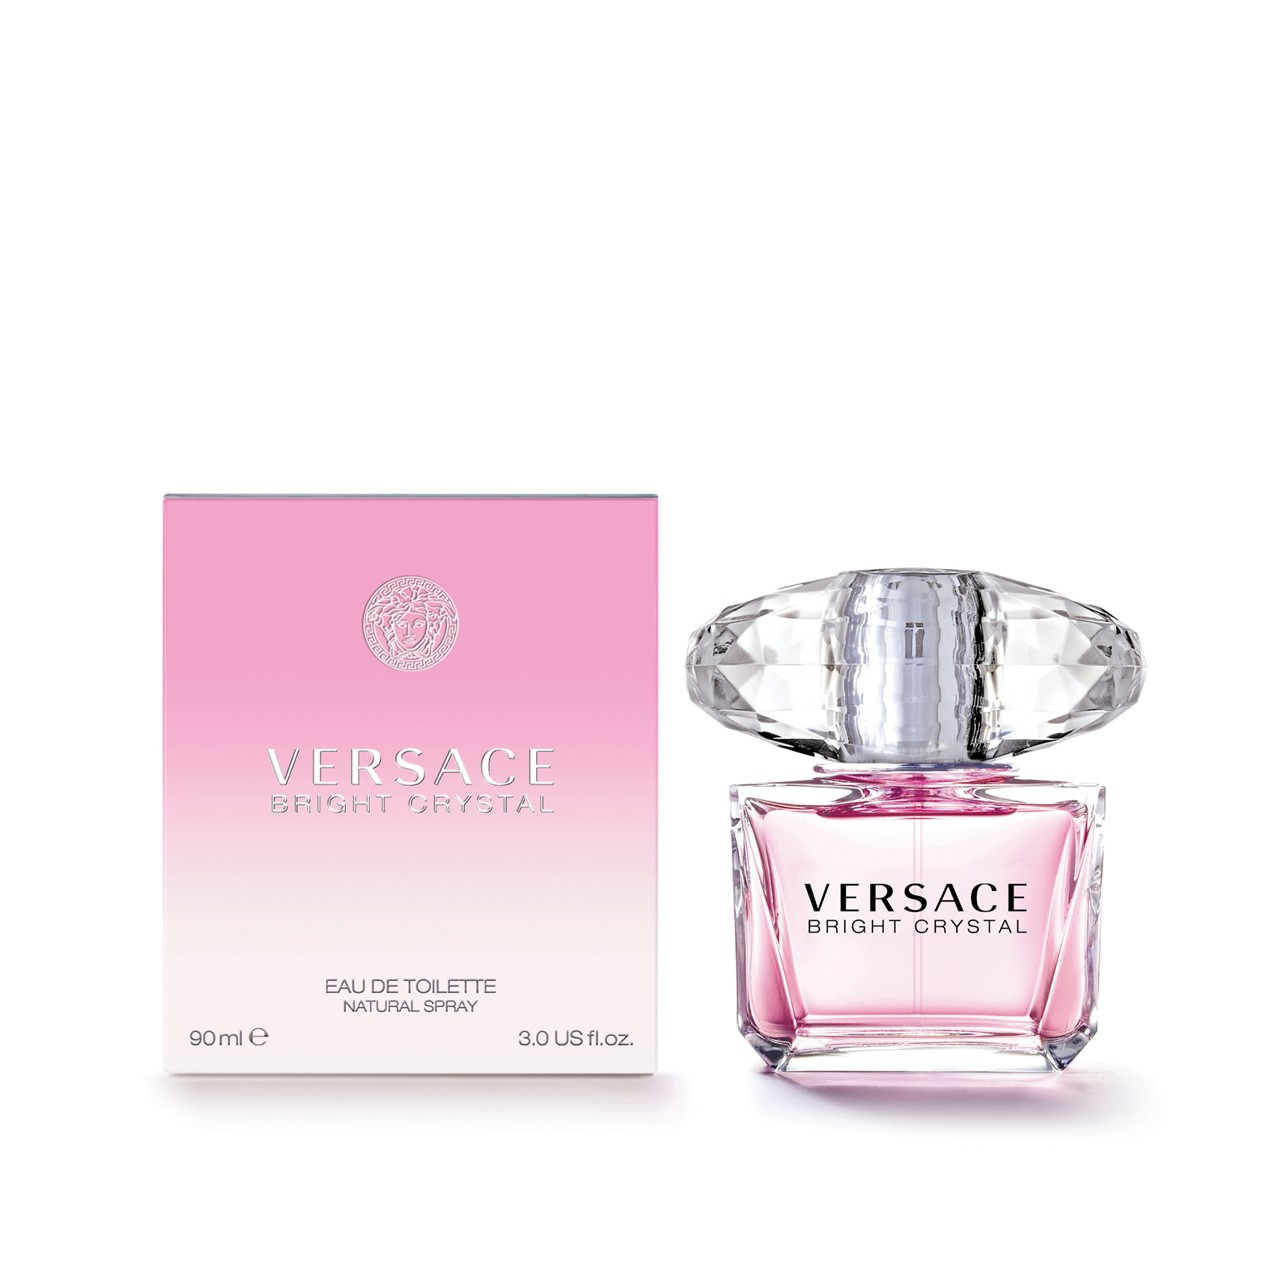 Versace Bright Crystal Eau de Toilette 90ml (3.0fl.oz.)